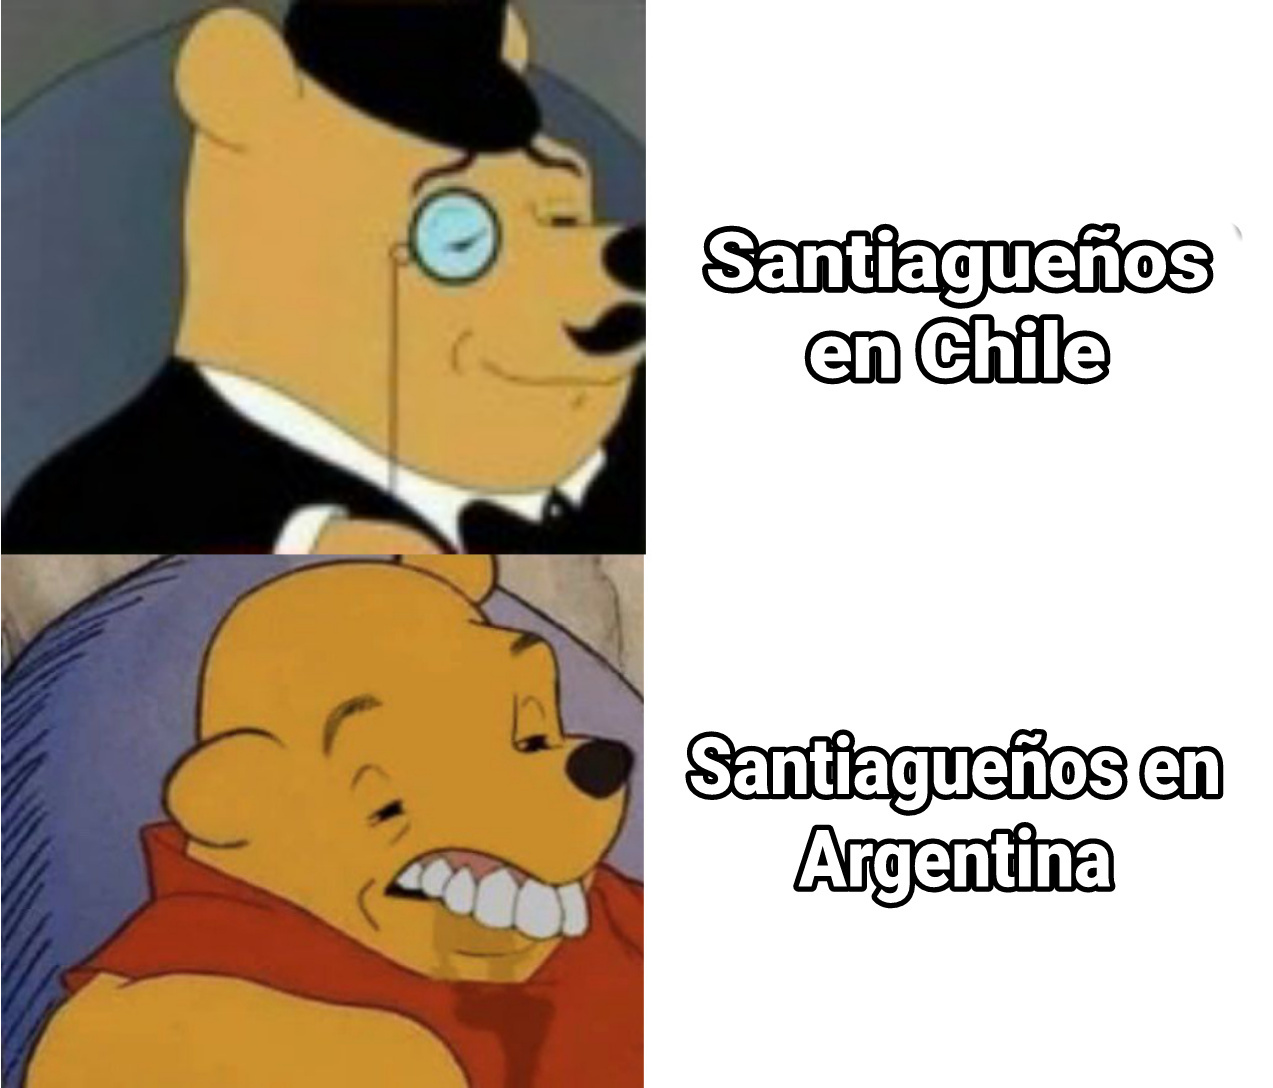 Santiago de estero moment - meme